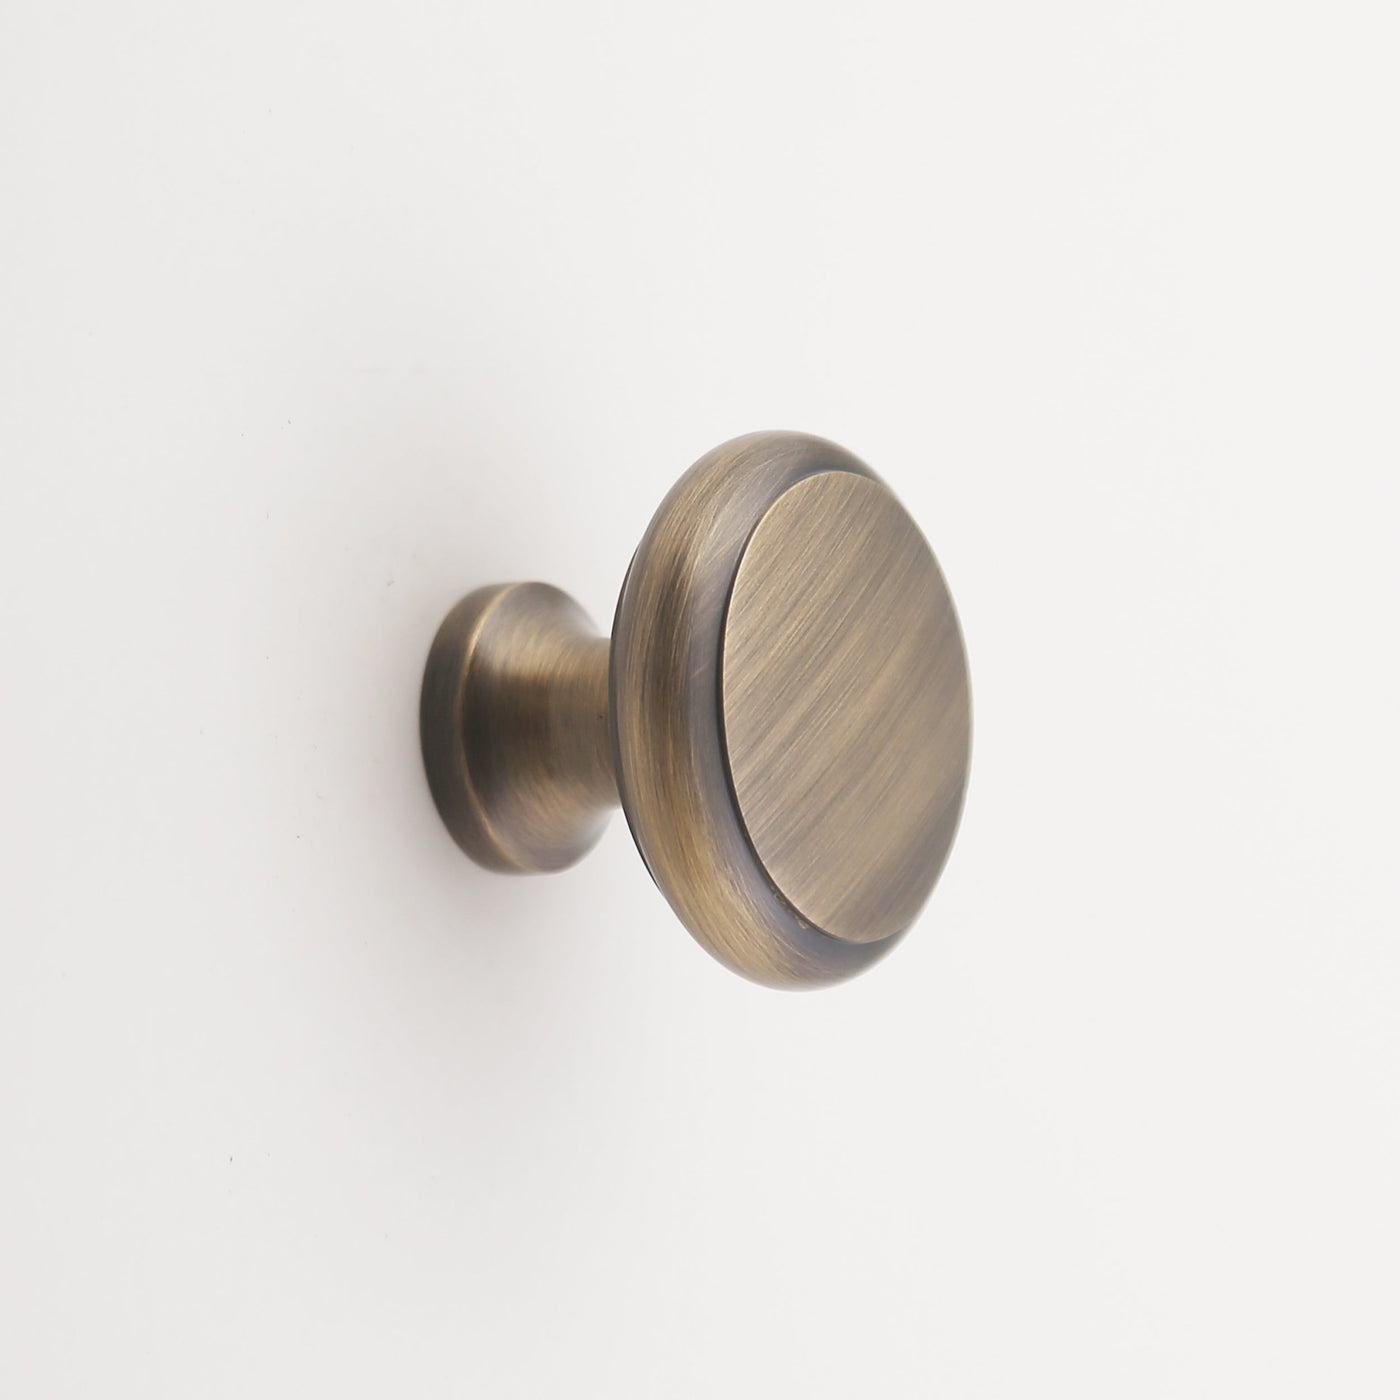 Elizabeth Solid Brass Cabinet Knob with Base - 1.25 – Madelyn Carter